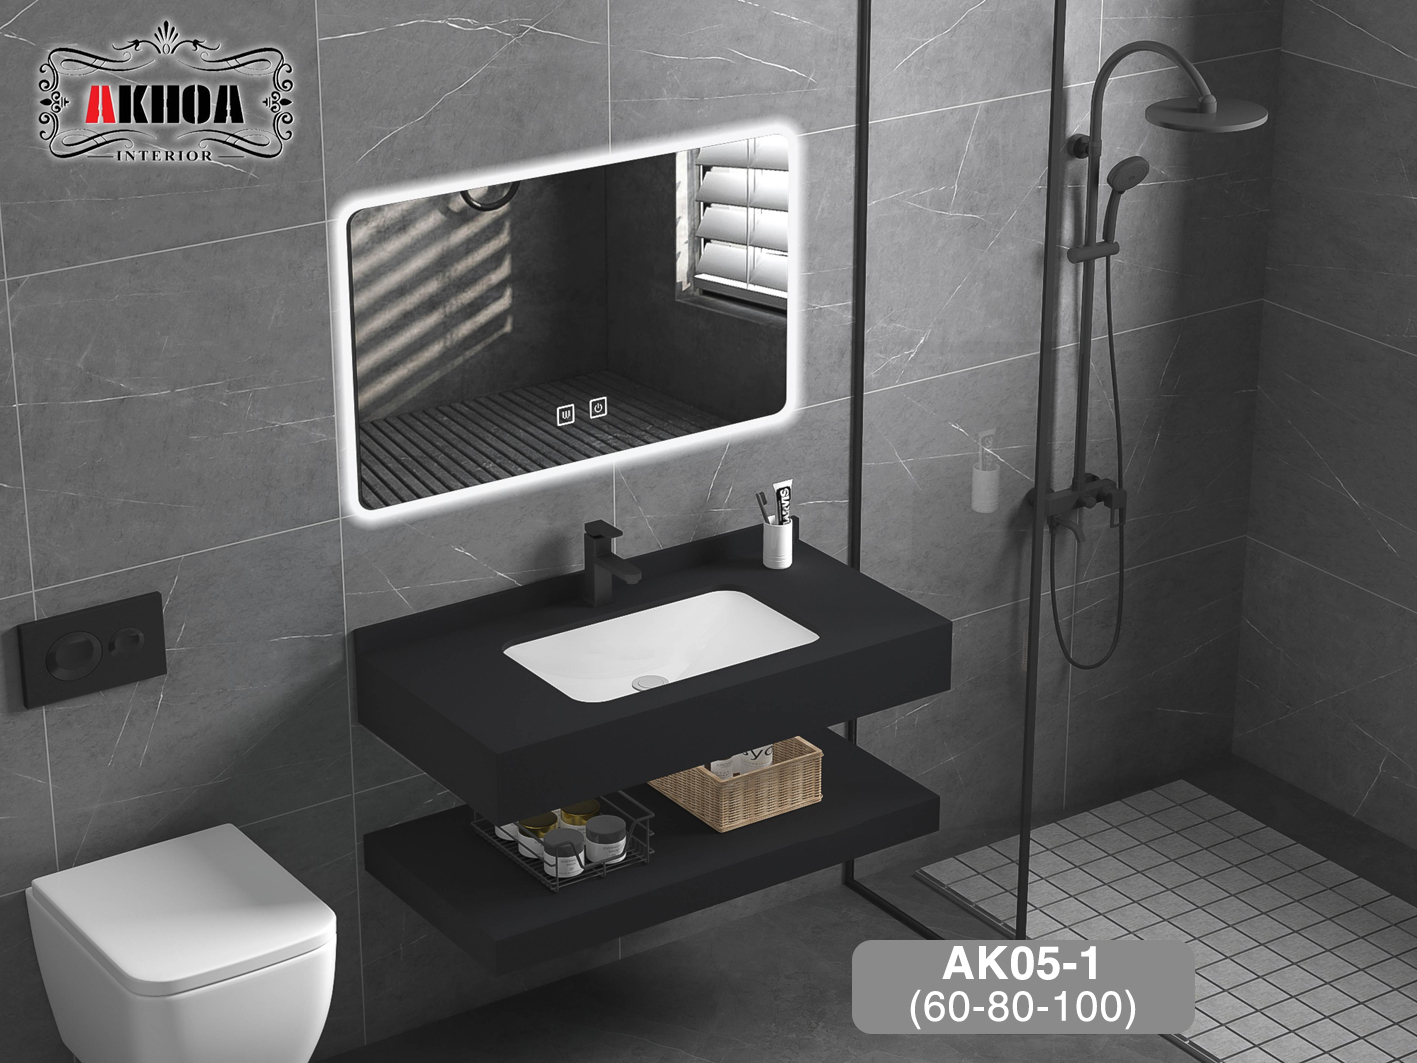 Tủ chậu lavabo mặt đá 2 tầng AKhoa AK05-1(60-80-100)